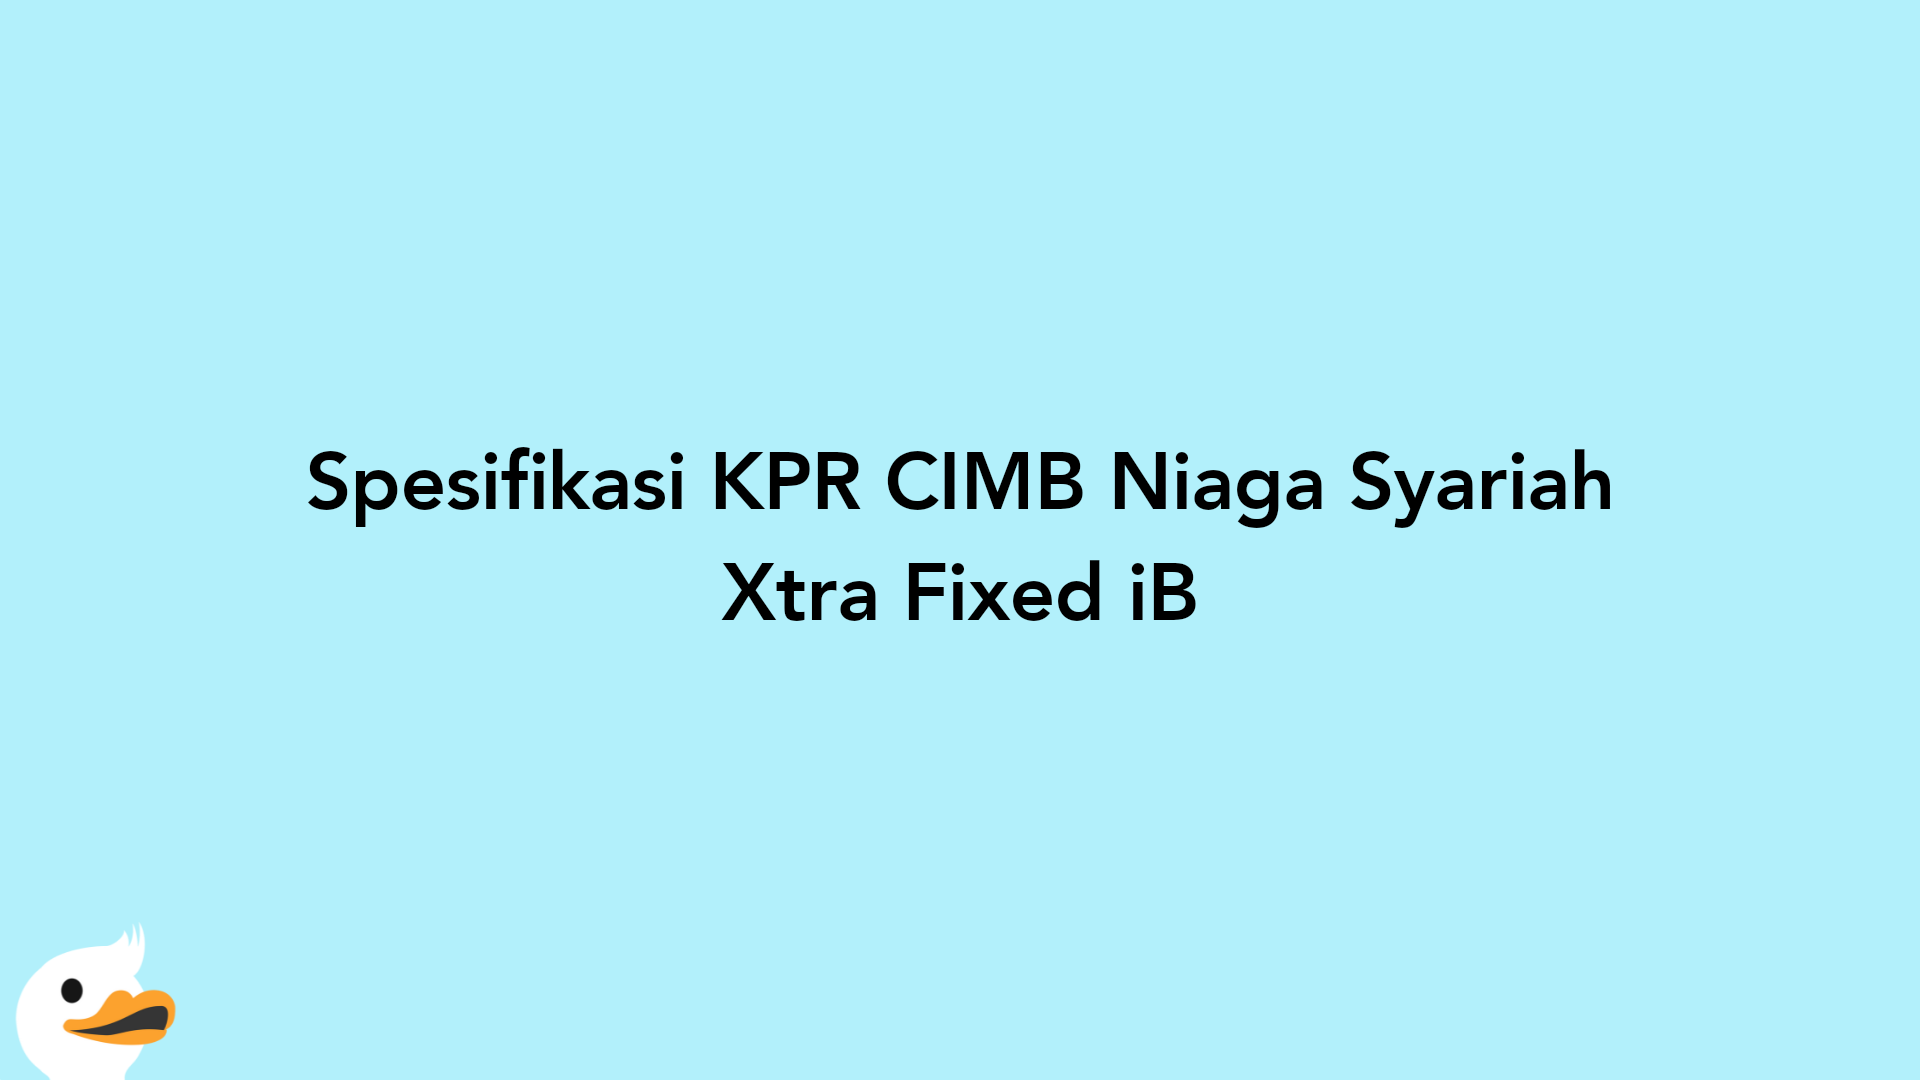 Spesifikasi KPR CIMB Niaga Syariah Xtra Fixed iB